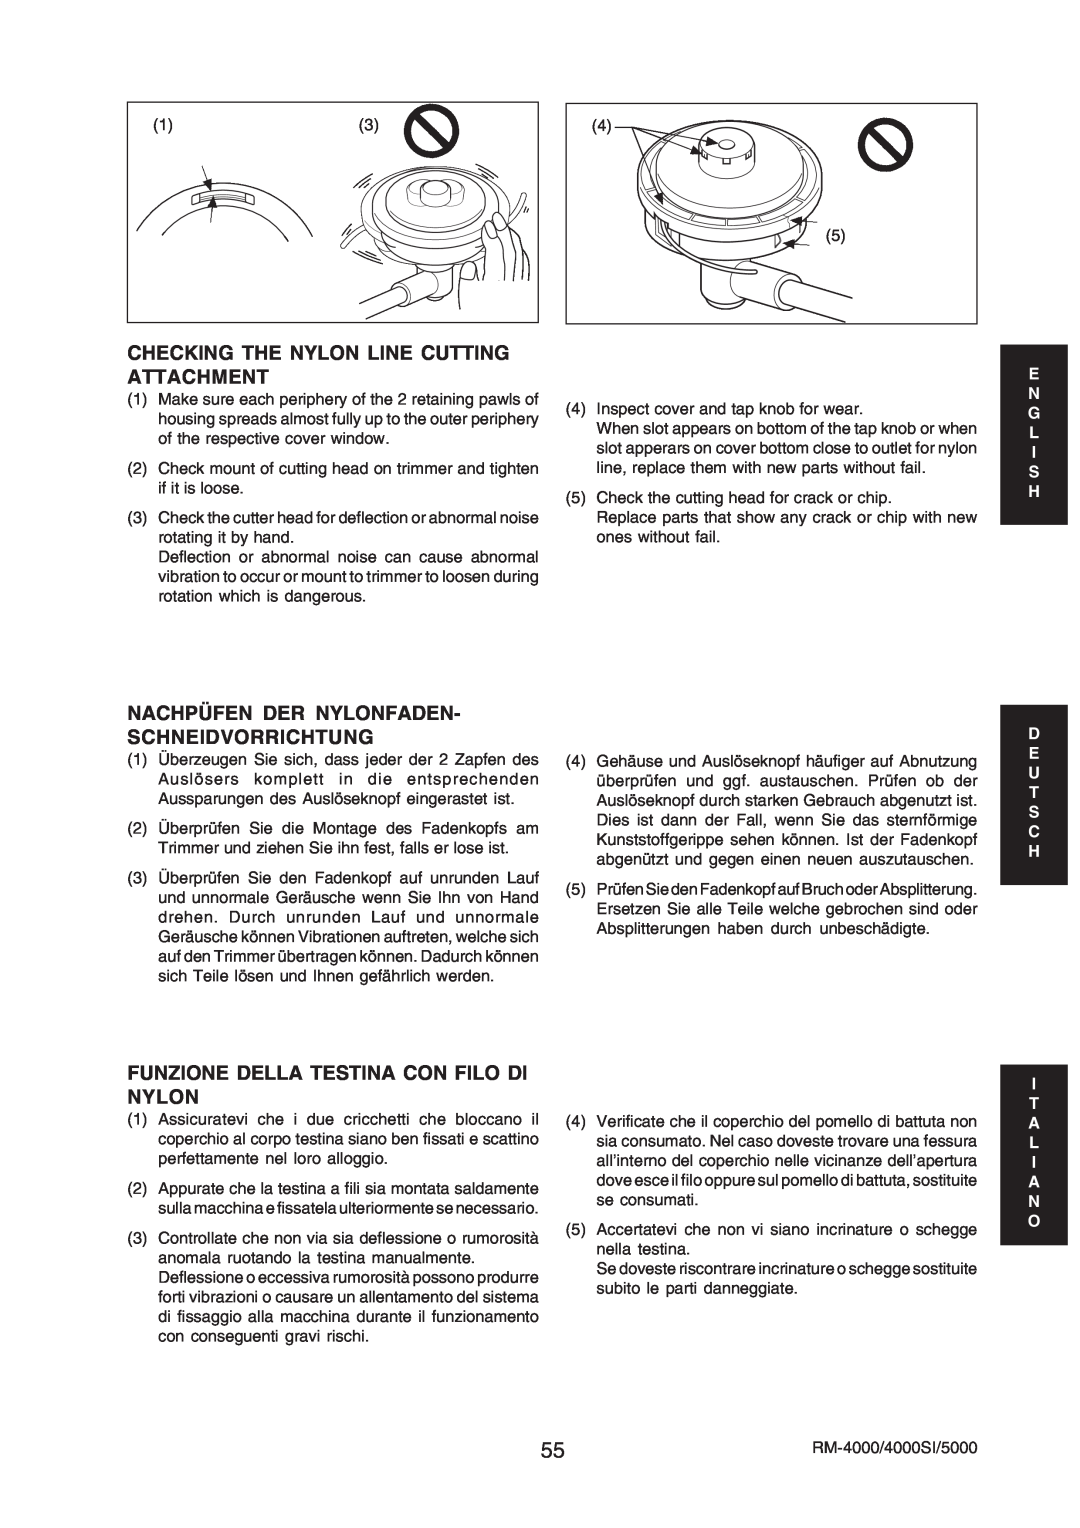 Echo RM-4000SI, RM-5000 manual Checking The Nylon Line Cutting Attachment, Nachpüfen Der Nylonfaden- Schneidvorrichtung 